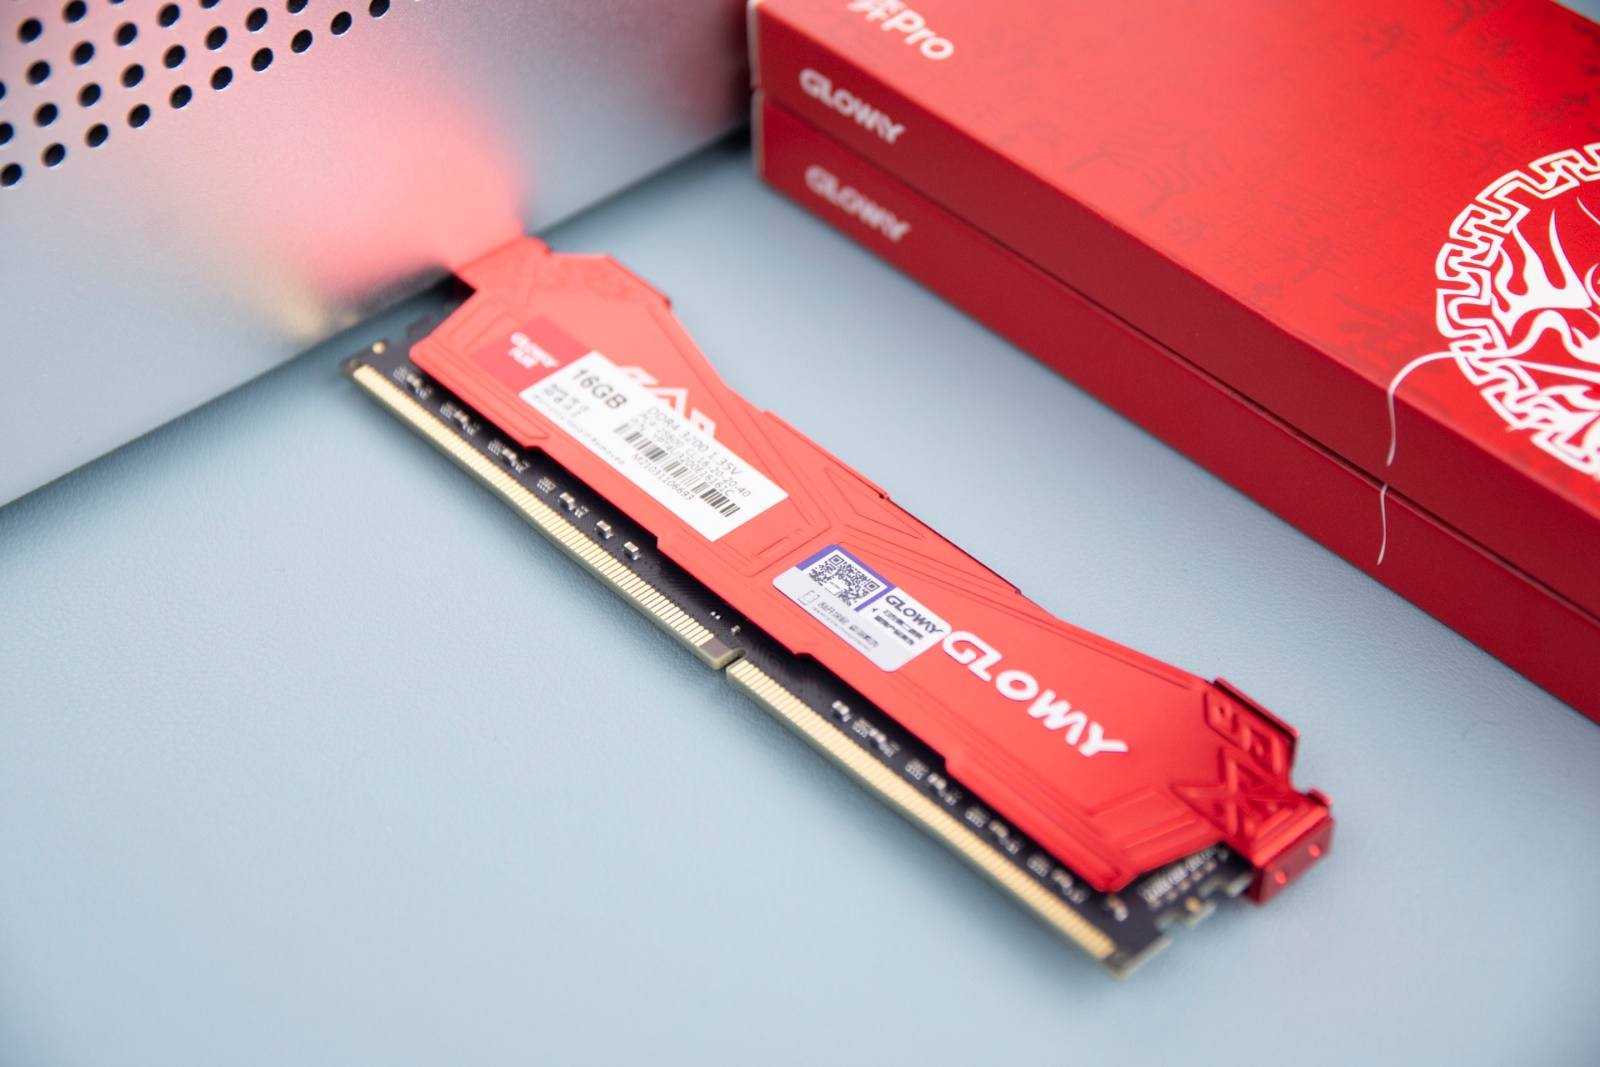 芝奇DDR4 2400超频指南：揭秘性能提升秘籍  第7张